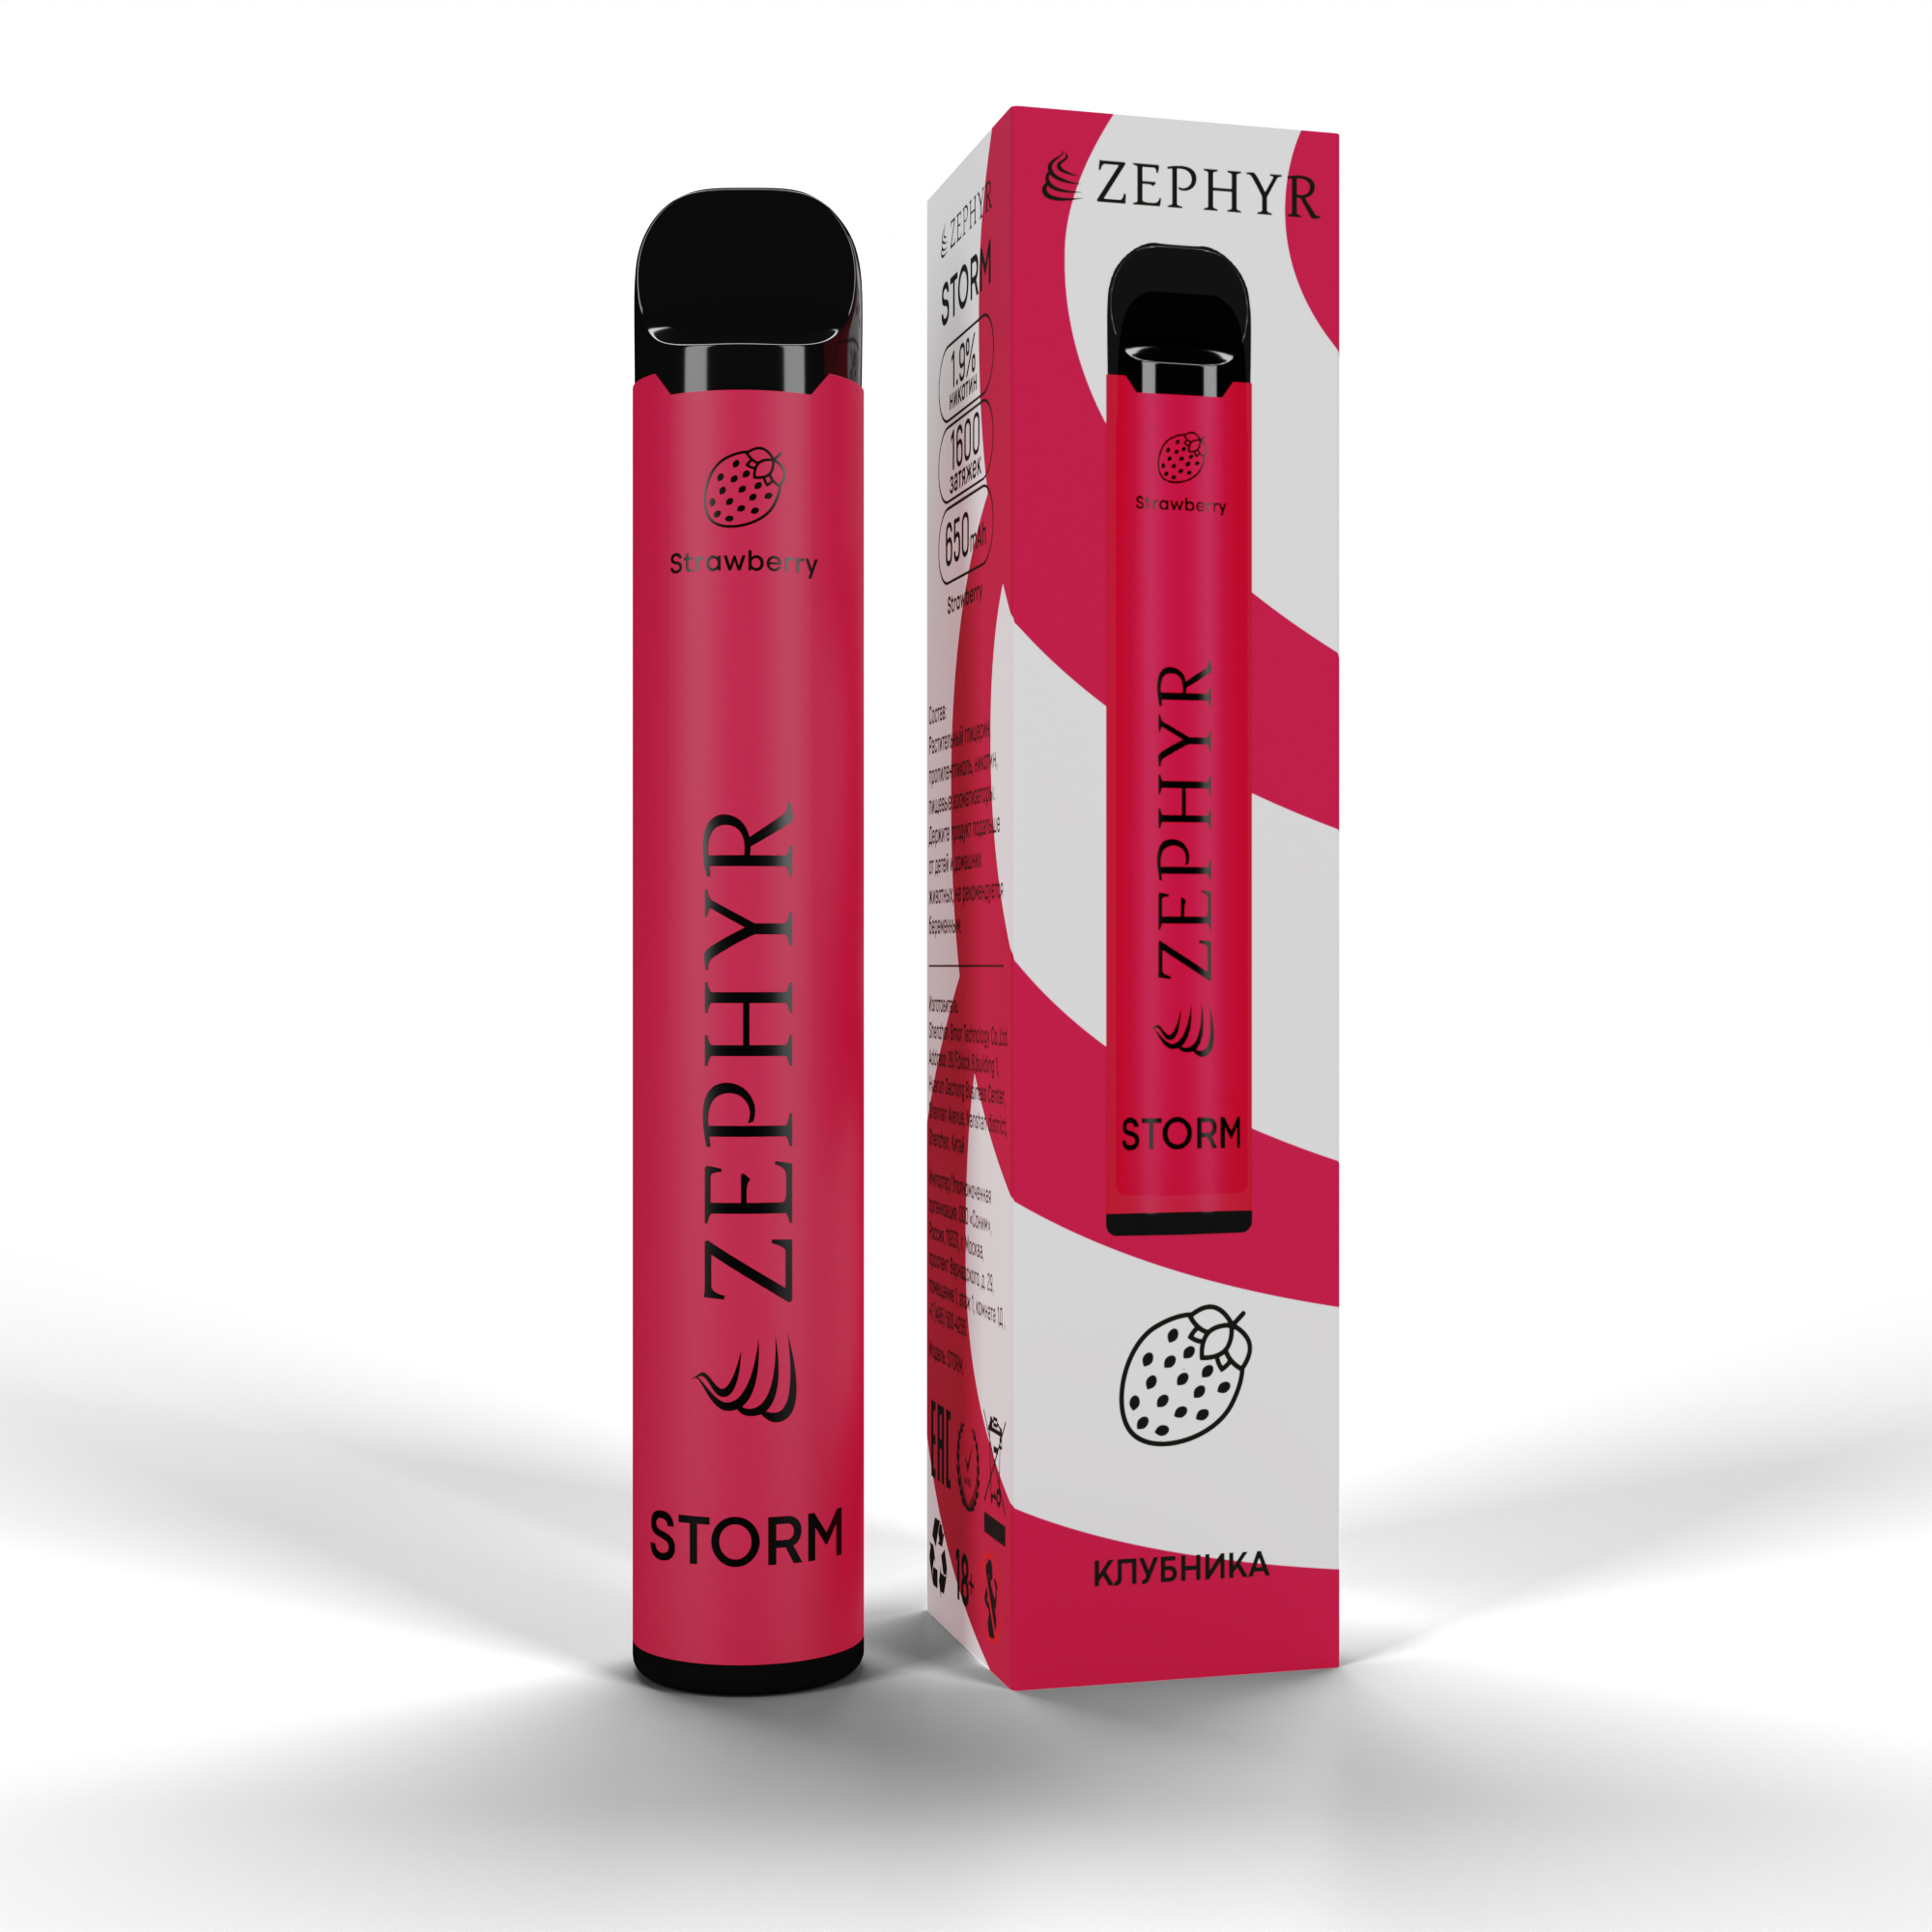 Одноразовая ЭС ZEPHYR Storm 1600,  Strawberry, 19 мг/см3, 5 мл (М)